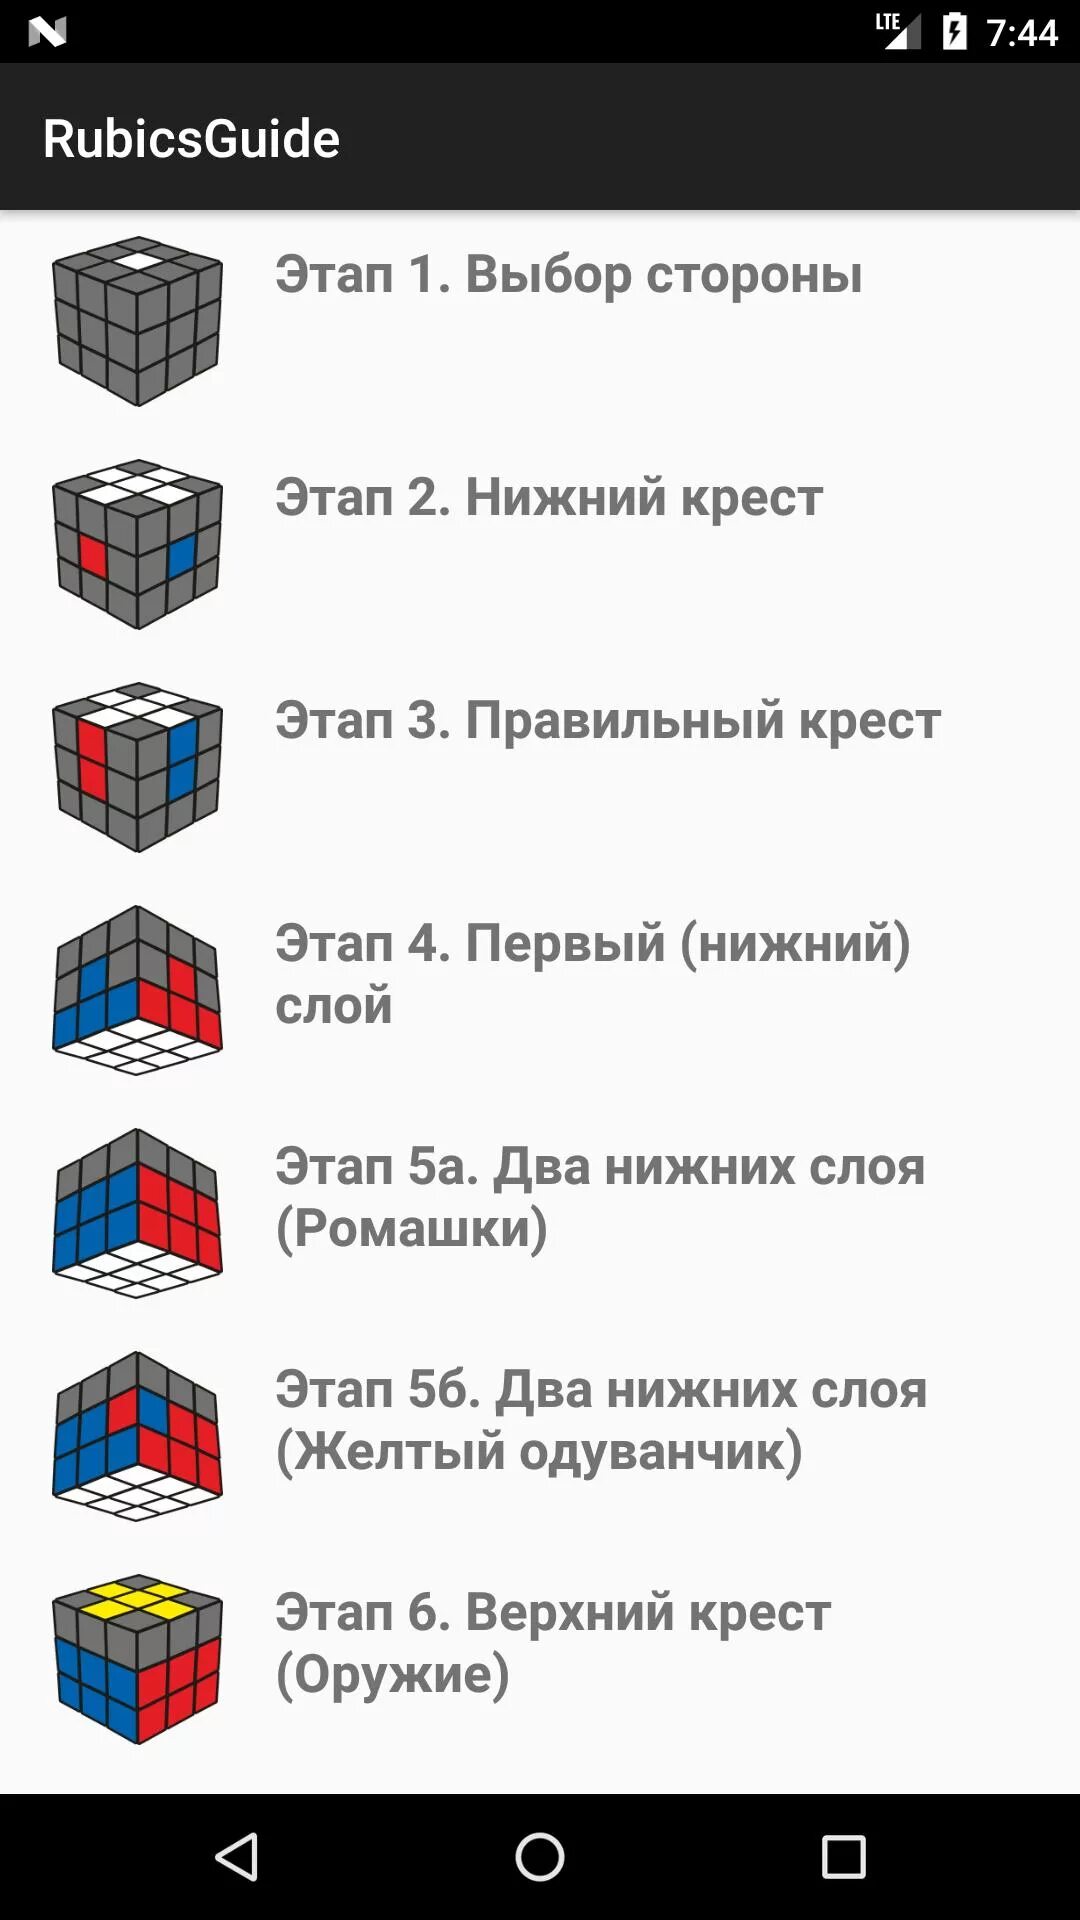 Приложение собрать кубик 3 на 3